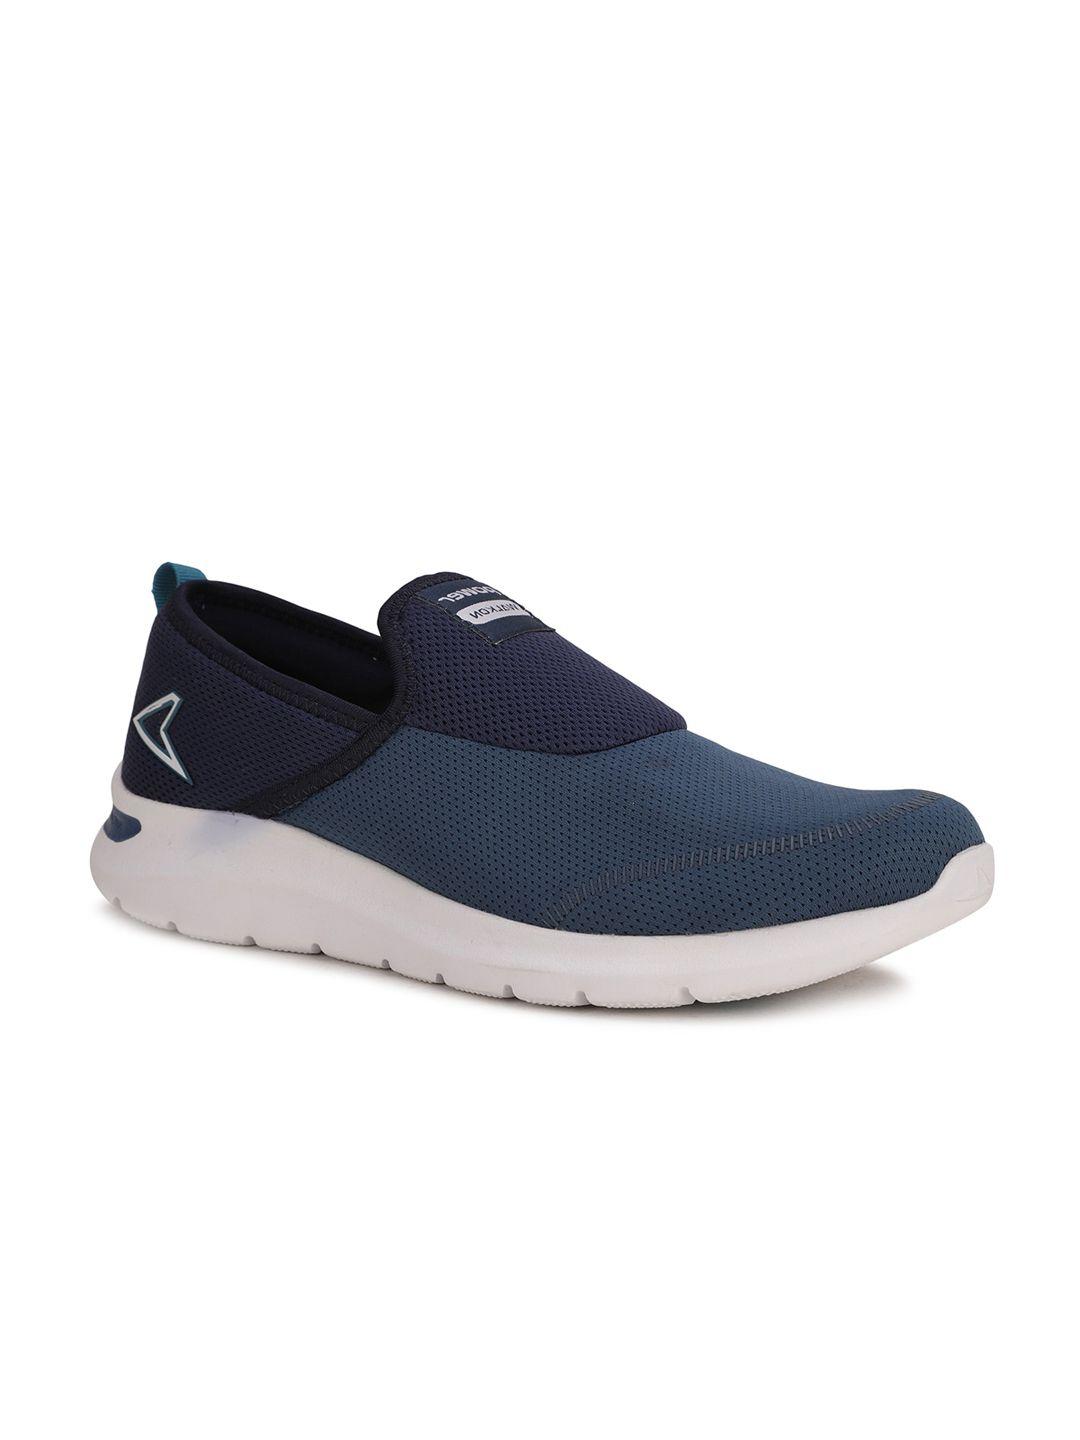 power-men-blue-woven-design-slip-on-sneakers